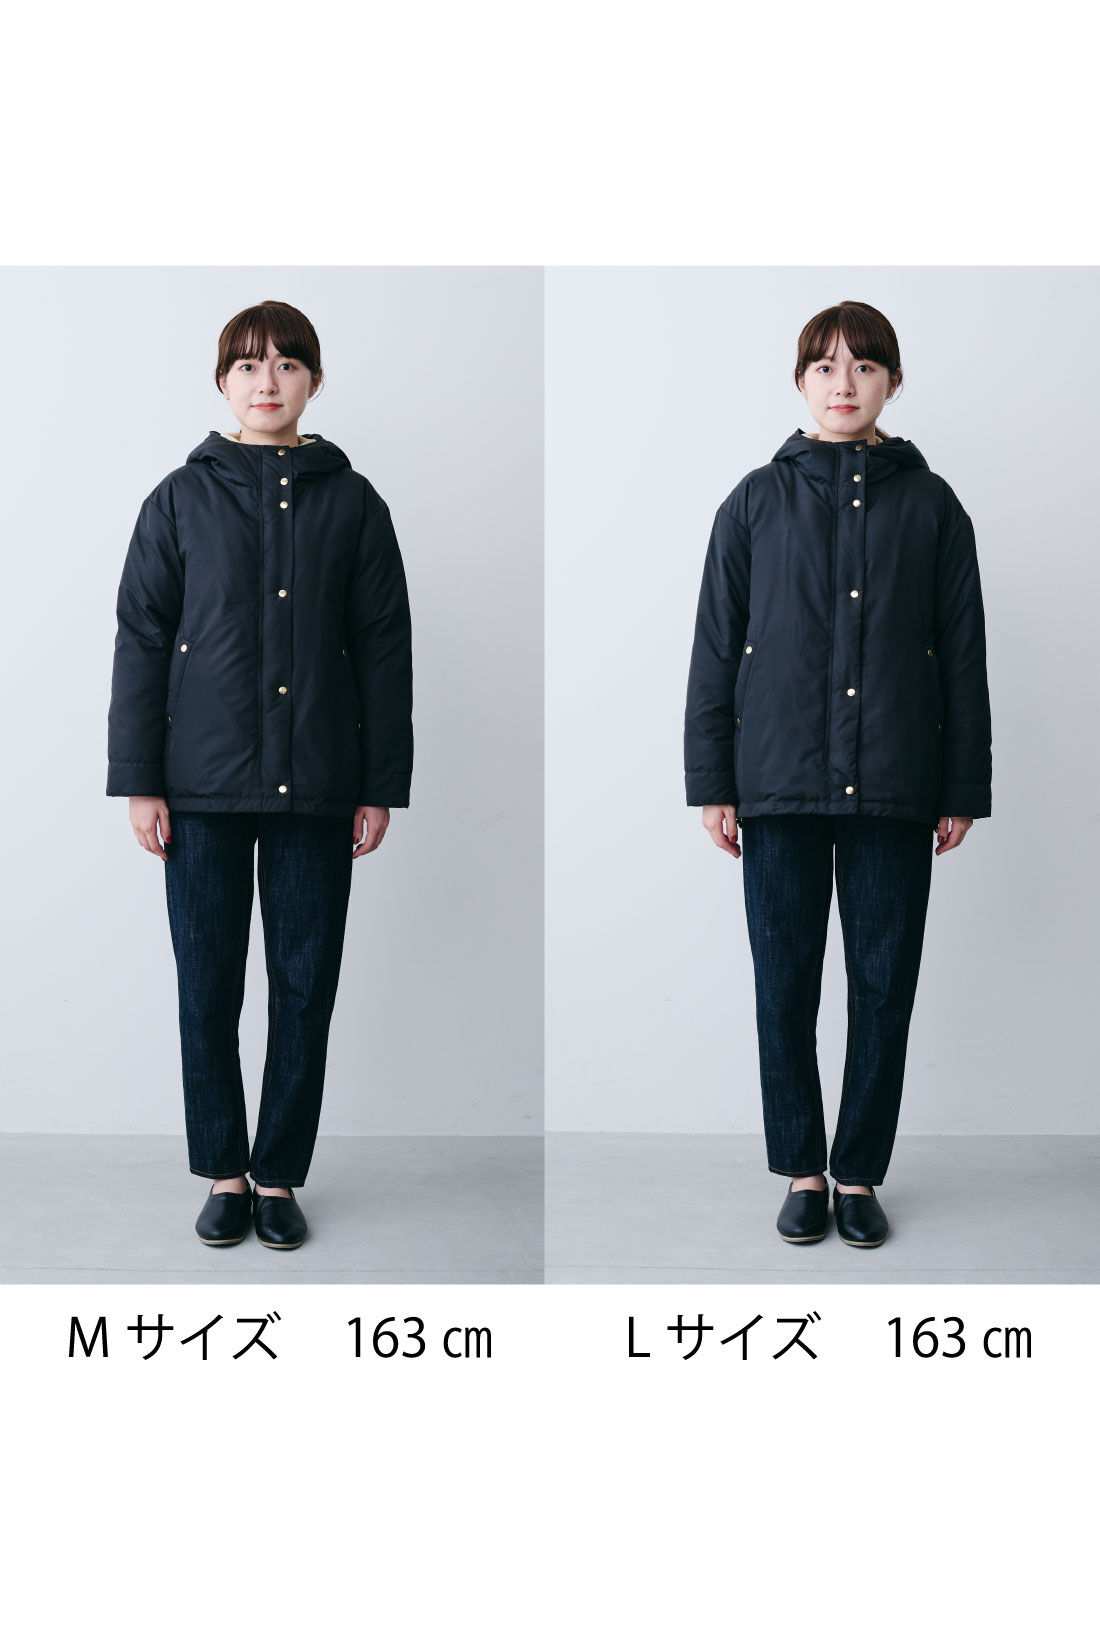 21,600円【THE NORTH FACE】マウンテンダウンジャケット ブラック Mサイズ